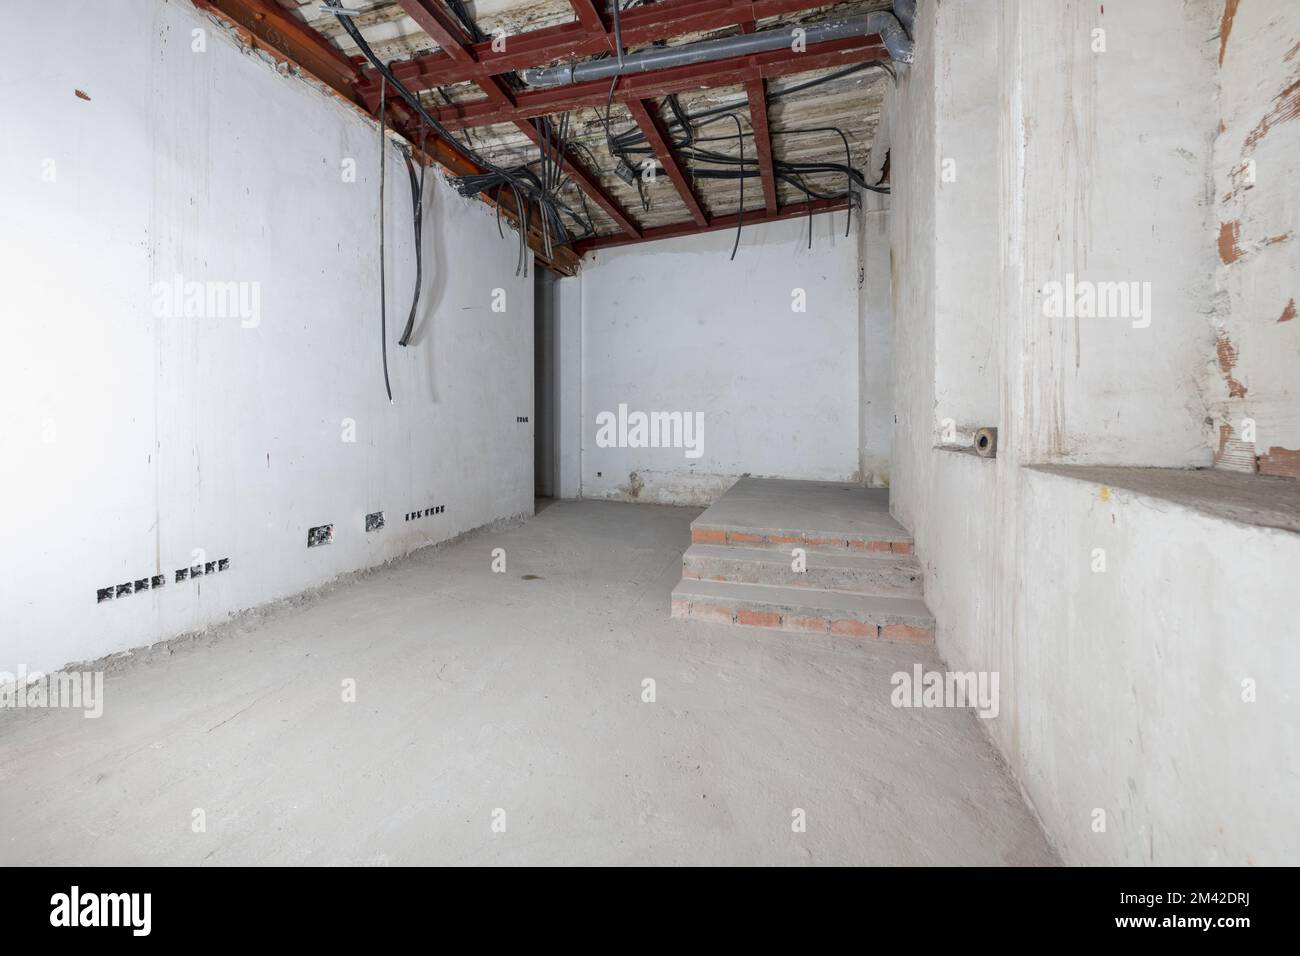 Rohraum mit verputzten Wänden im renovierten Gebäude mit Betonböden, Wellkunststoffrohren zur Leitung von Elektrokabeln Stockfoto